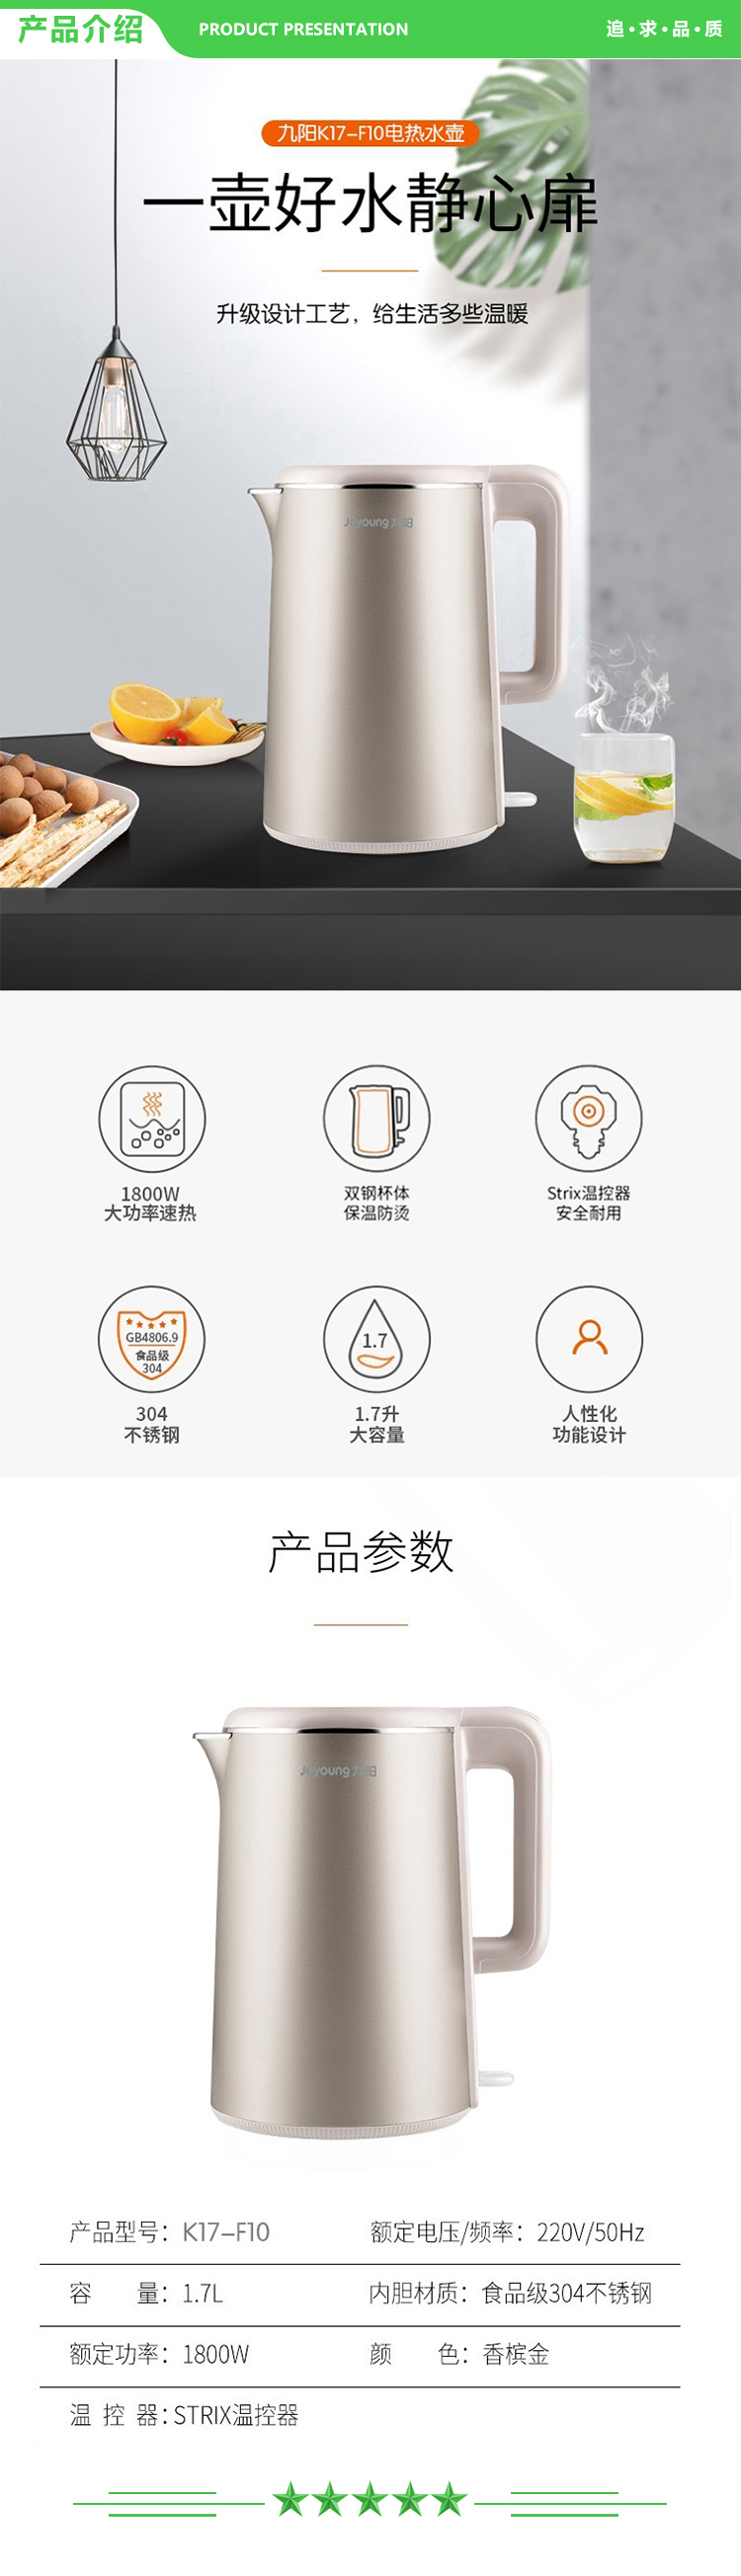 九阳 Joyoung K17-F10 电热水壶1.7升 2.jpg